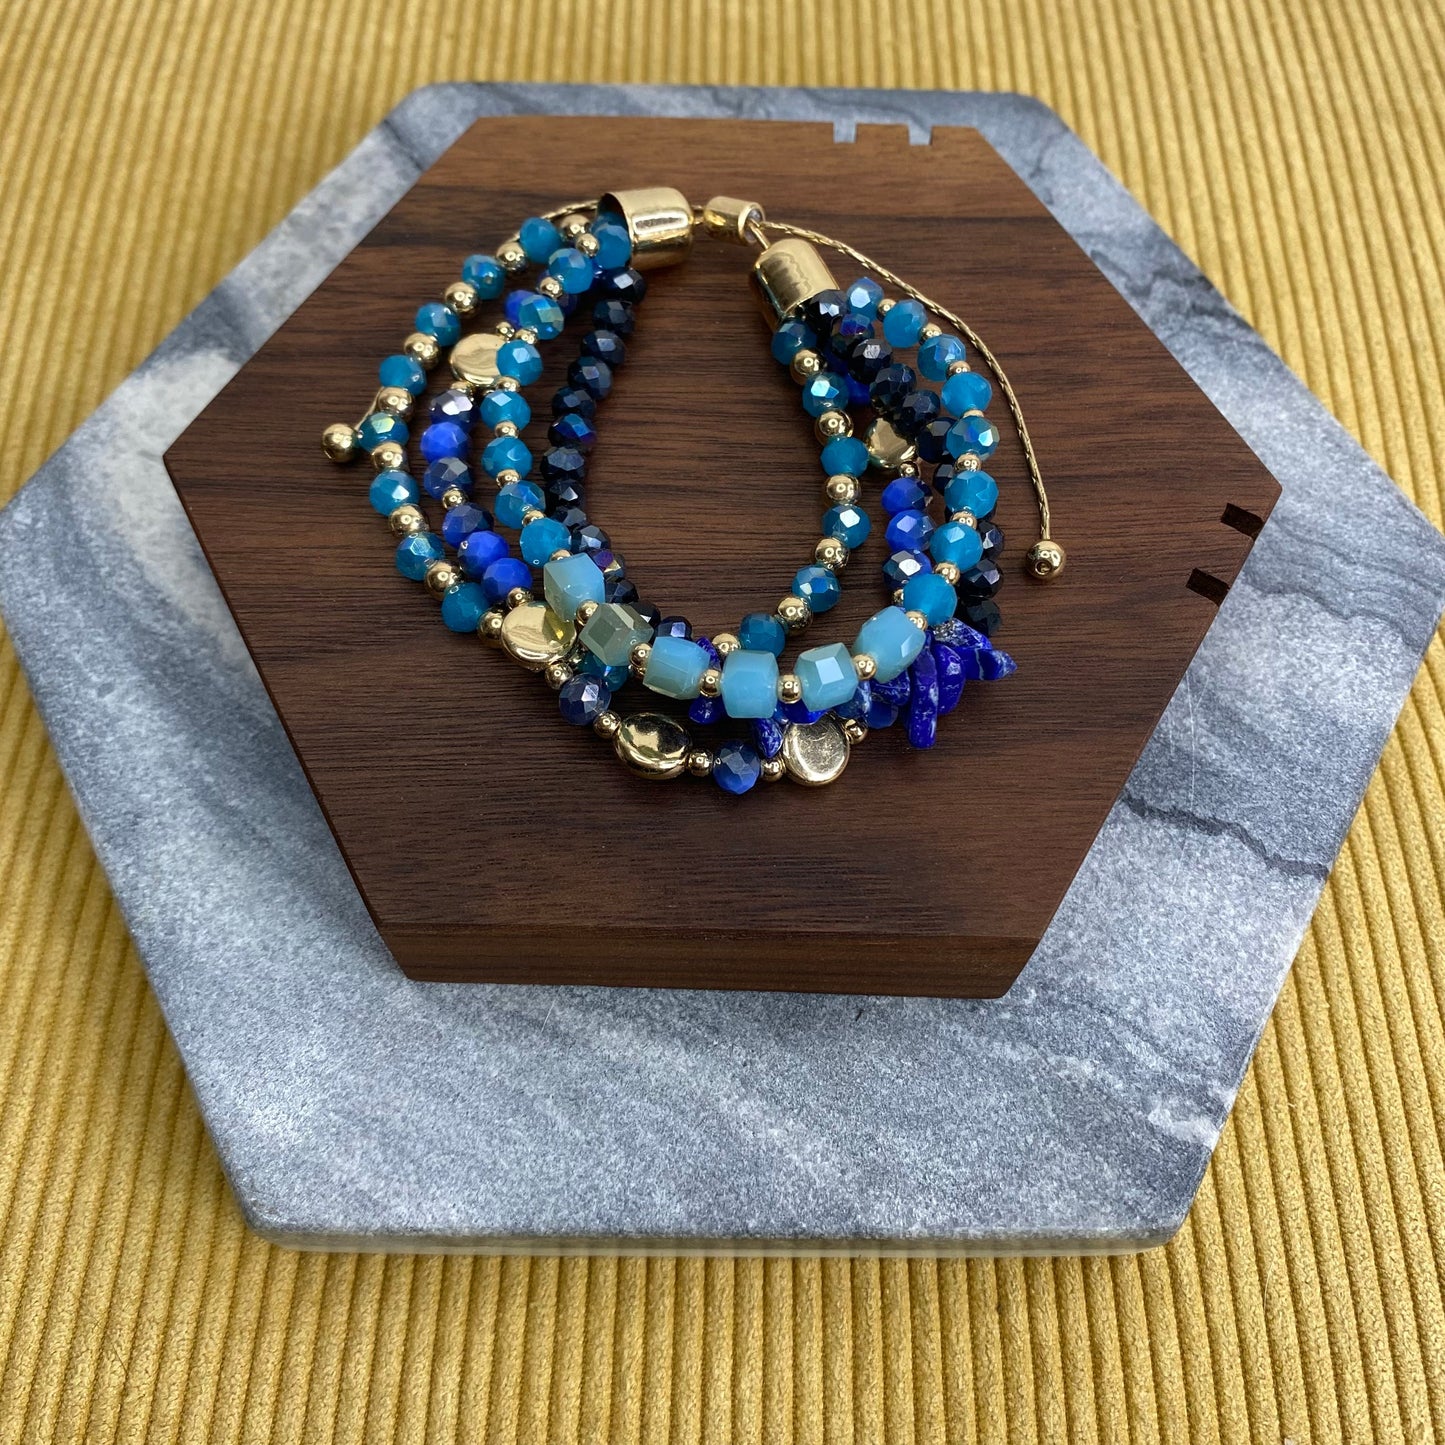 Bracelet - Adjustable Beads - Blue